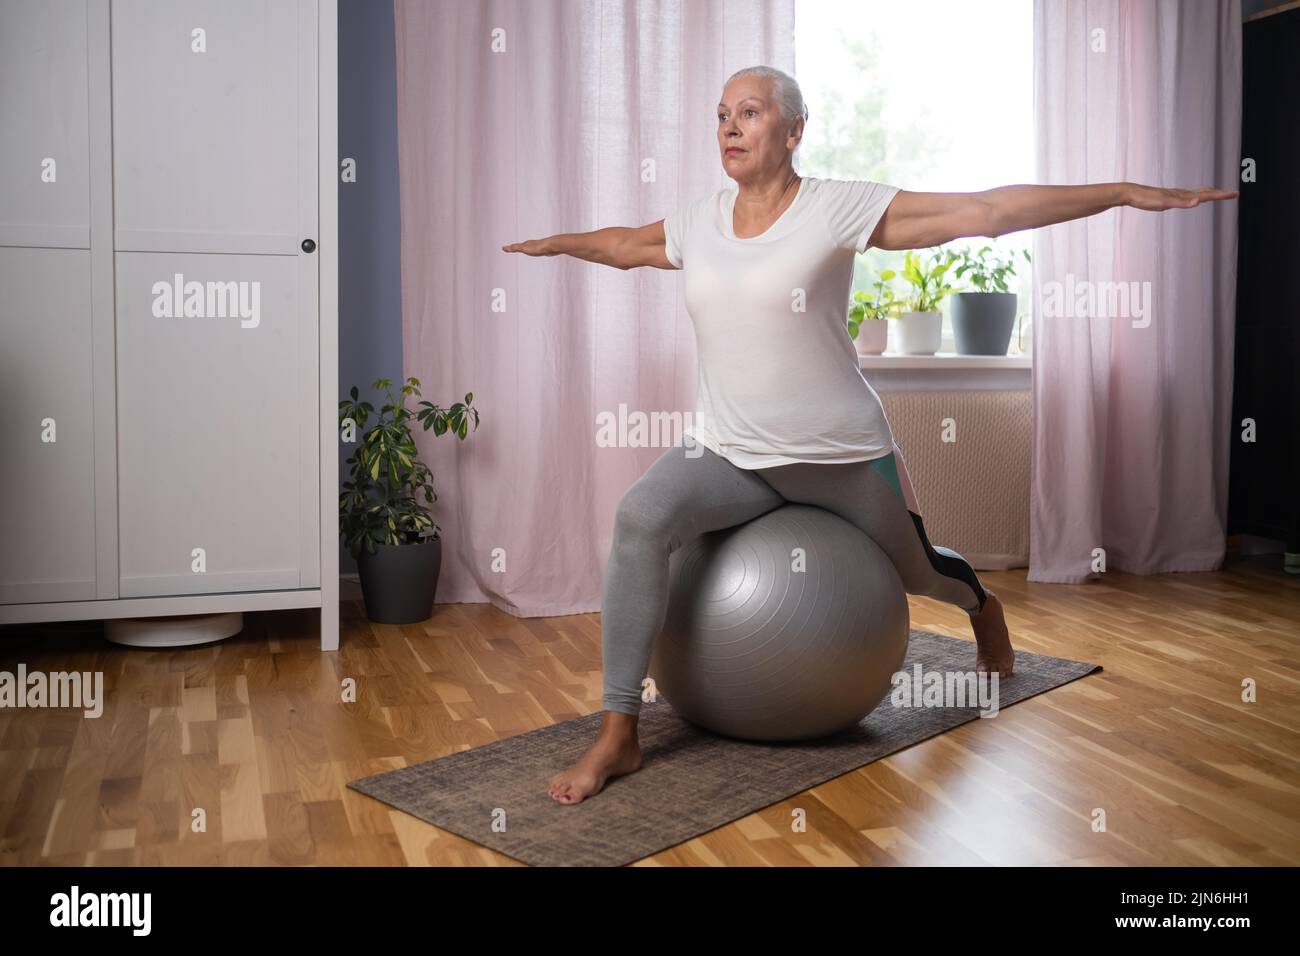 Happy senior lady doing yoga asana at living room. Stock Photo